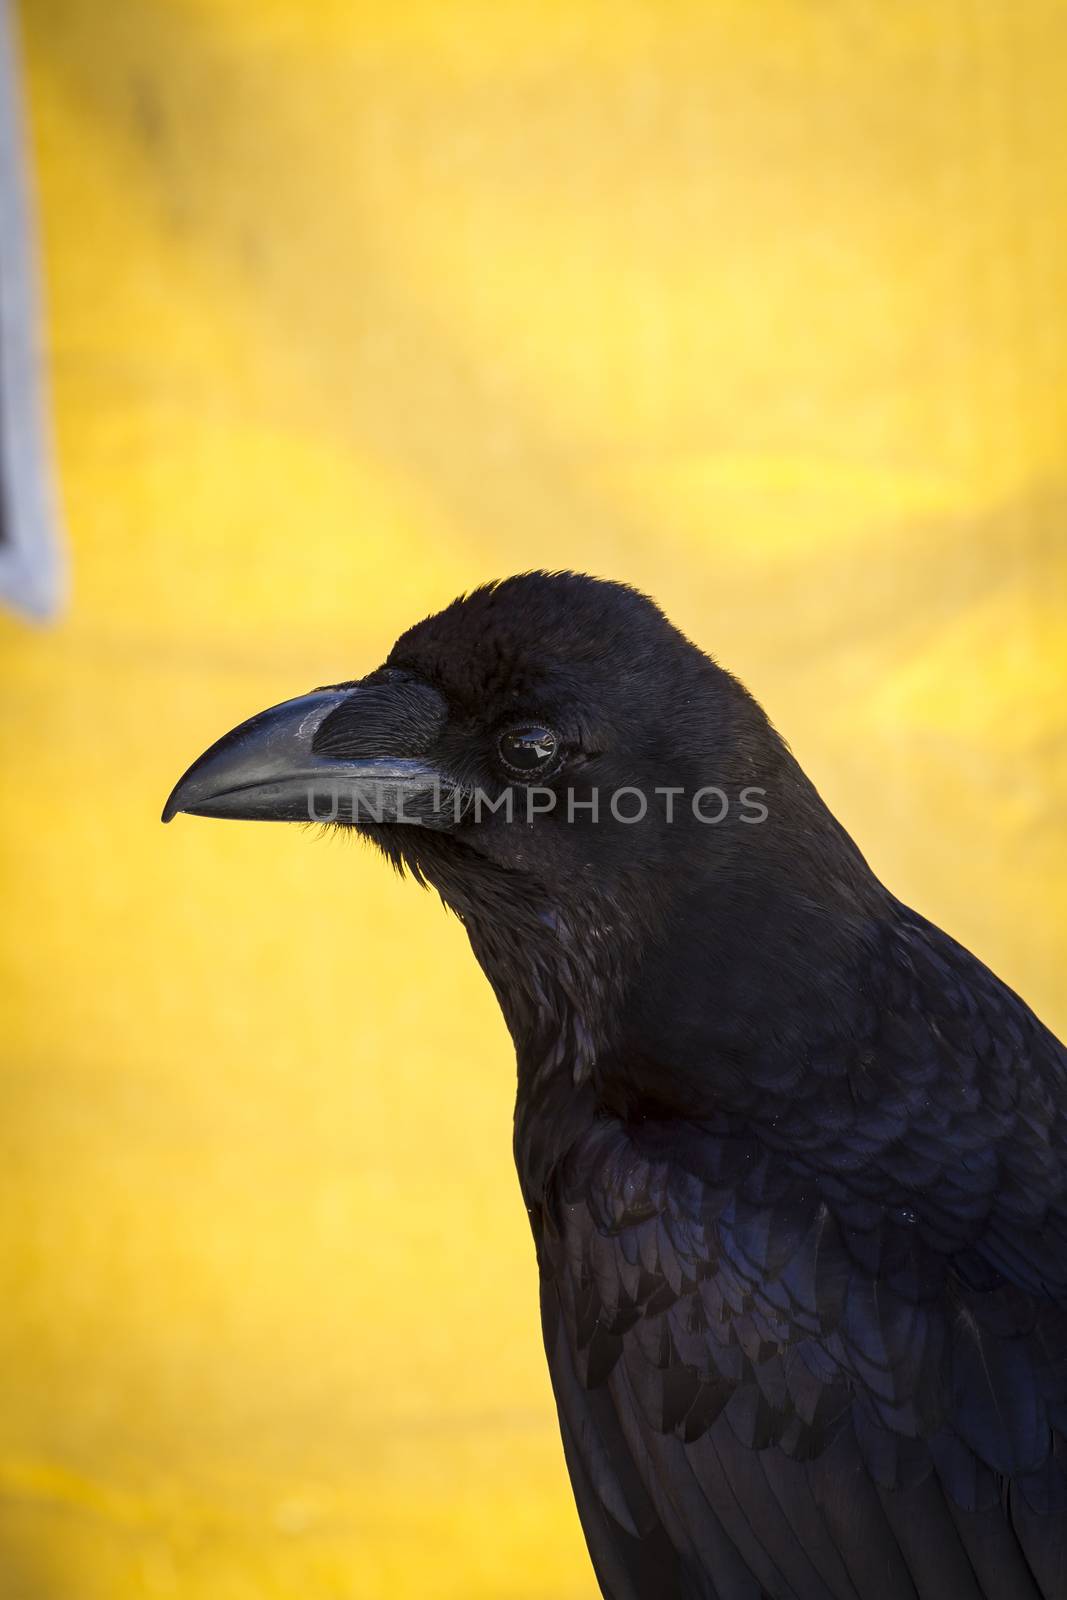 Looking black crow in a sample of birds of prey, medieval fair